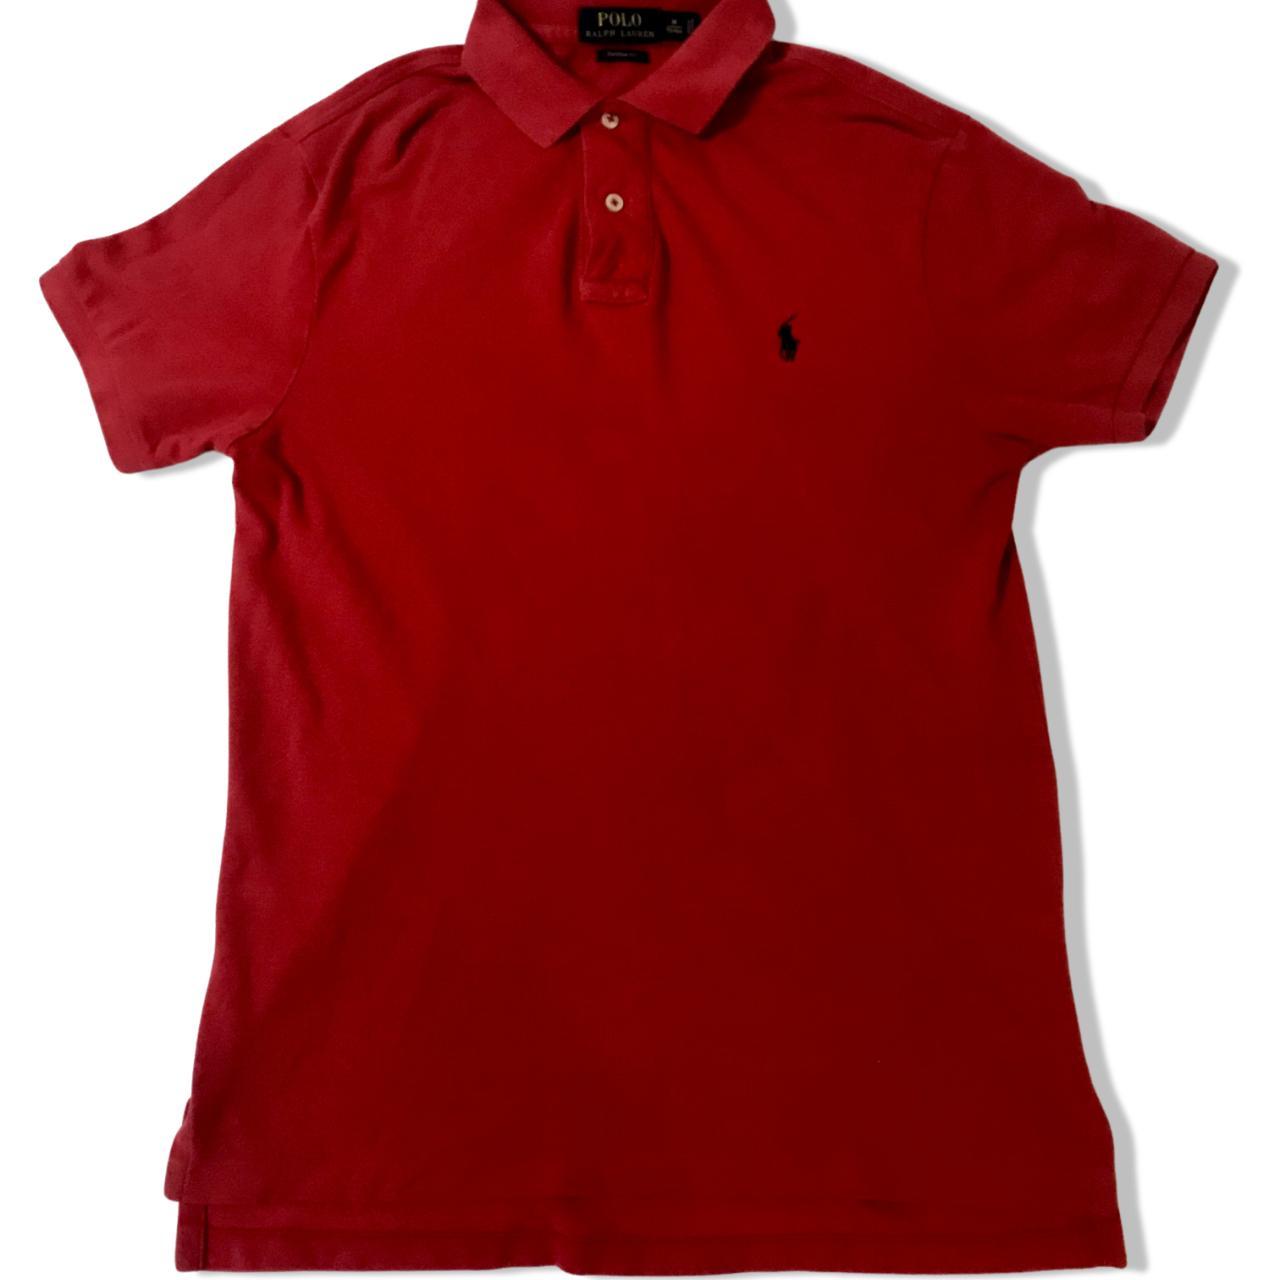 polo ralph lauren red polo shirt size... - Depop